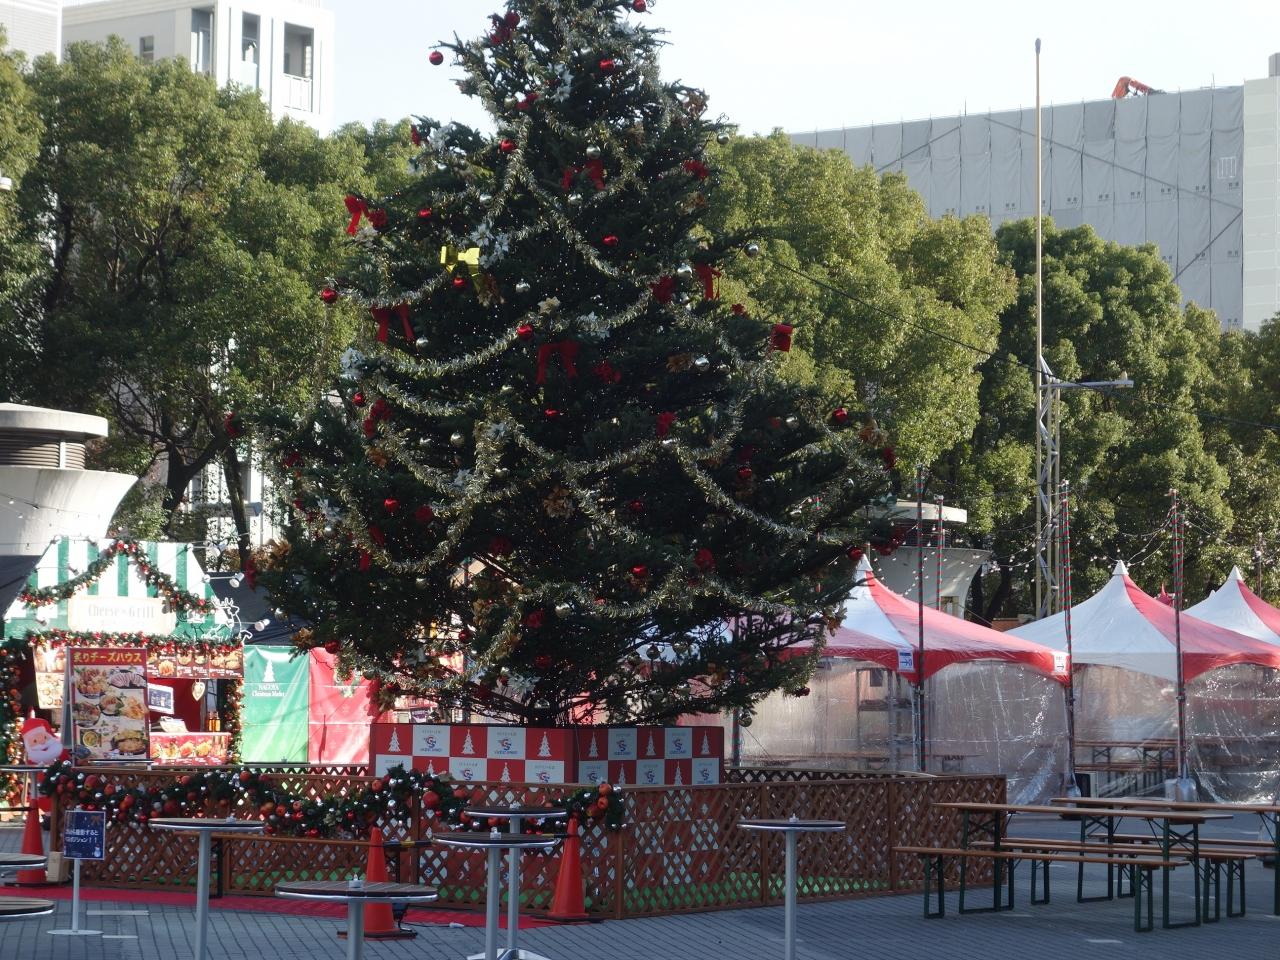 久屋大通公園でやっている 名古屋クリスマスマーケット19 に行ってきました 名古屋 愛知県 の旅行記 ブログ By Nomonomoさん フォートラベル